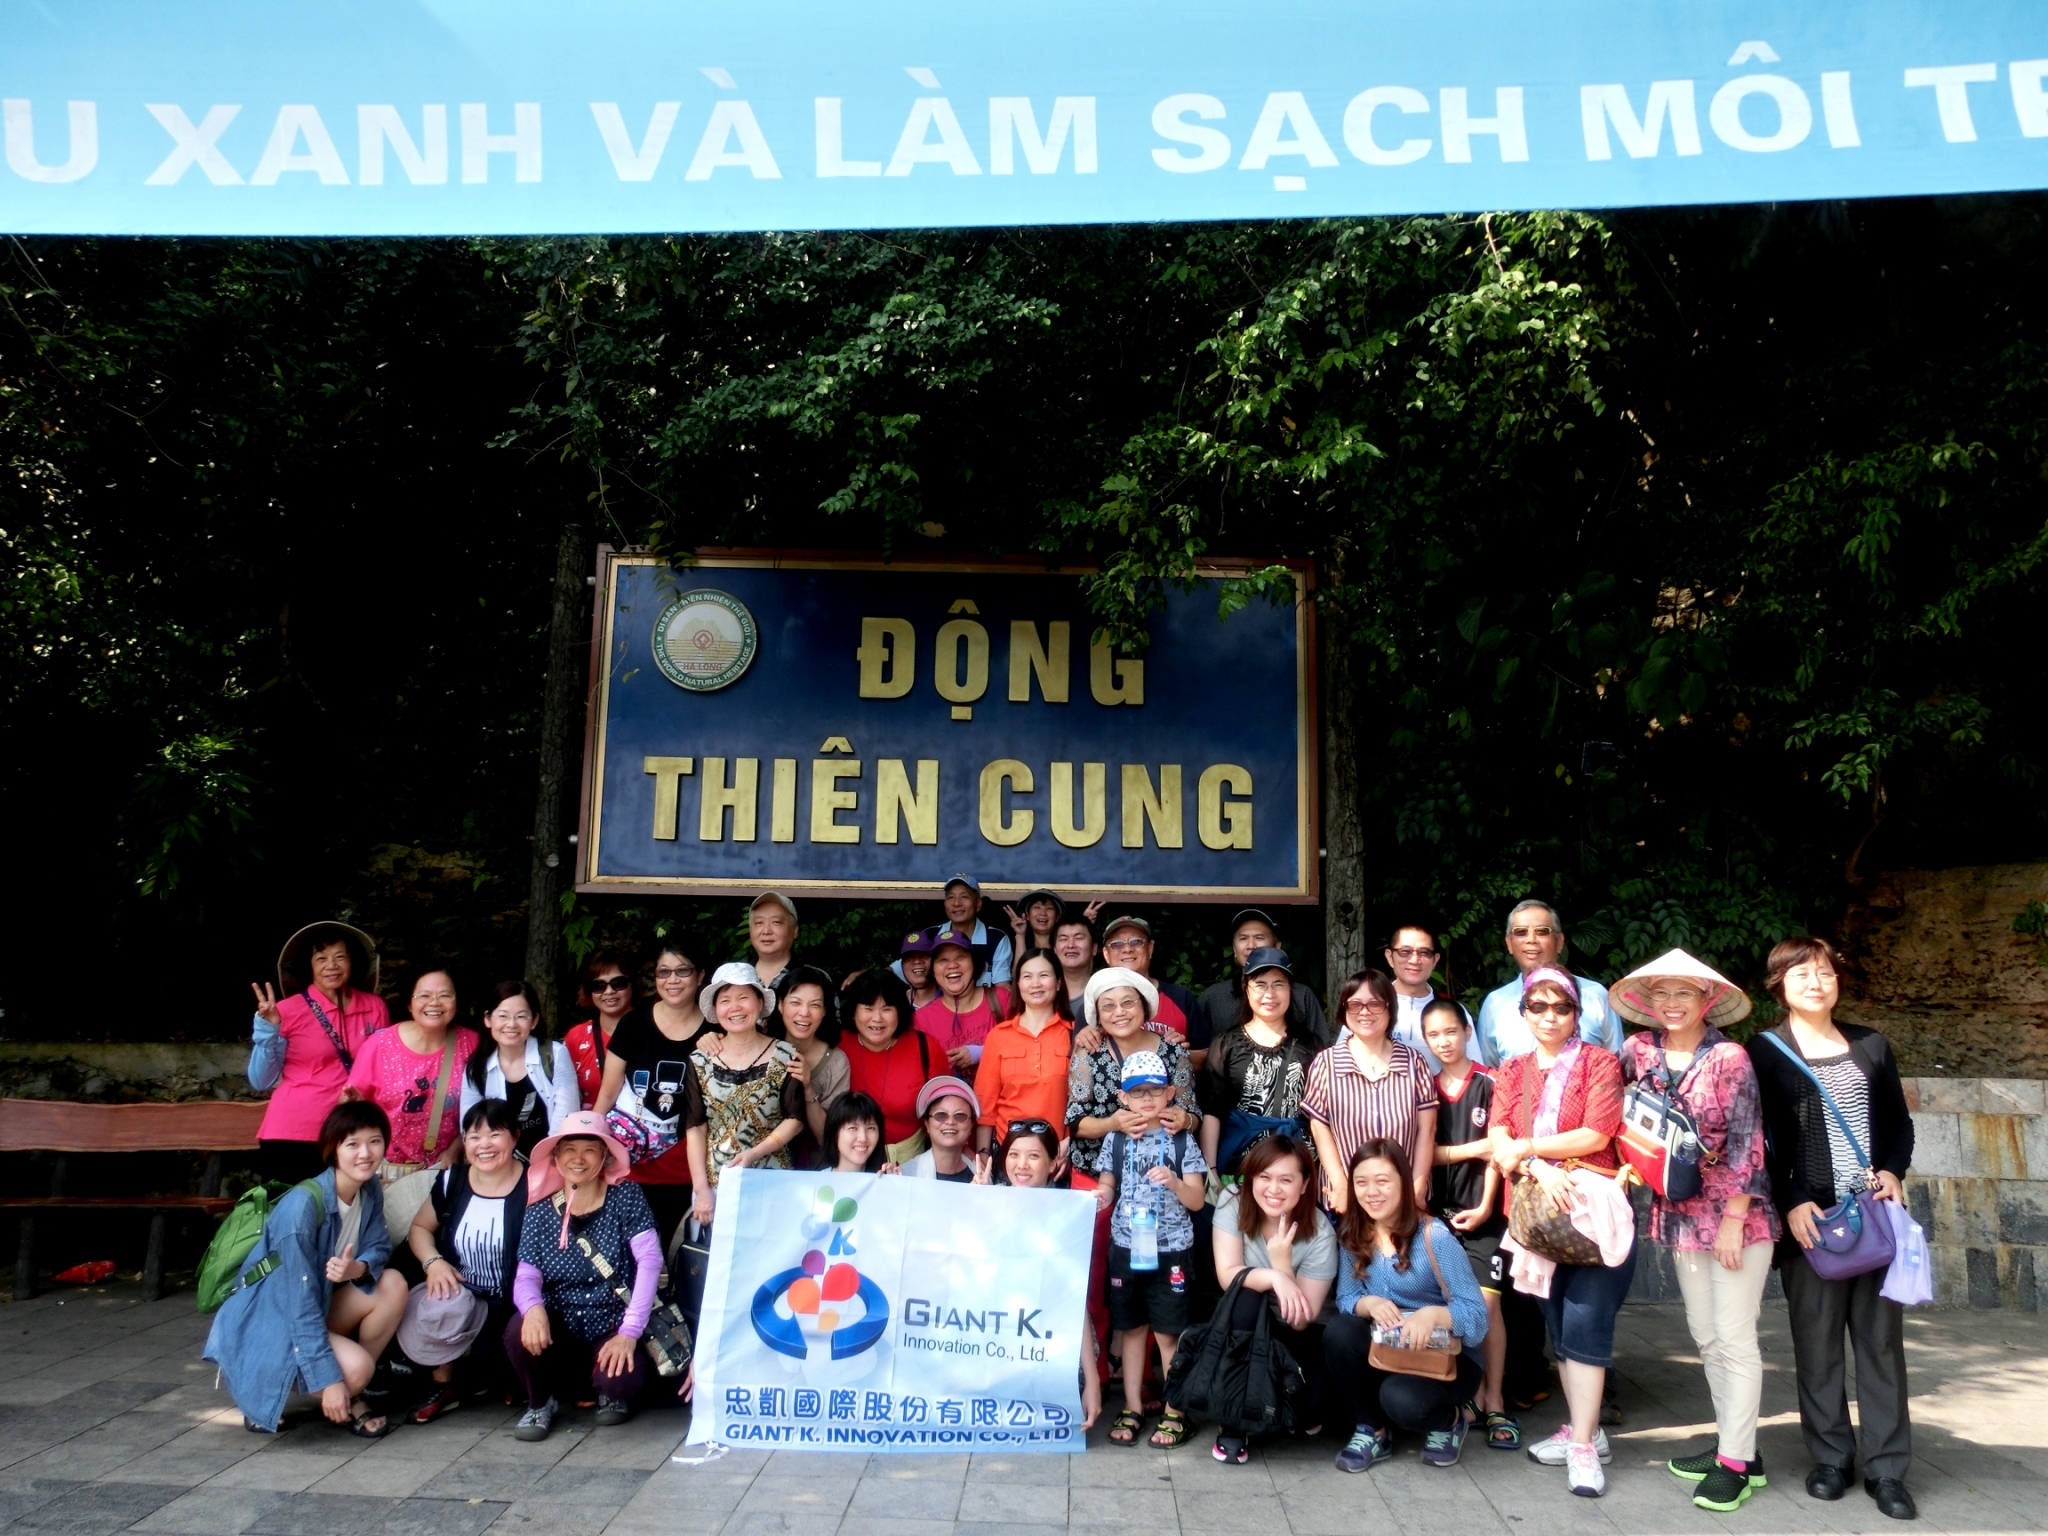 Giant K. Voyage d'entreprise au Vietnam en 2016